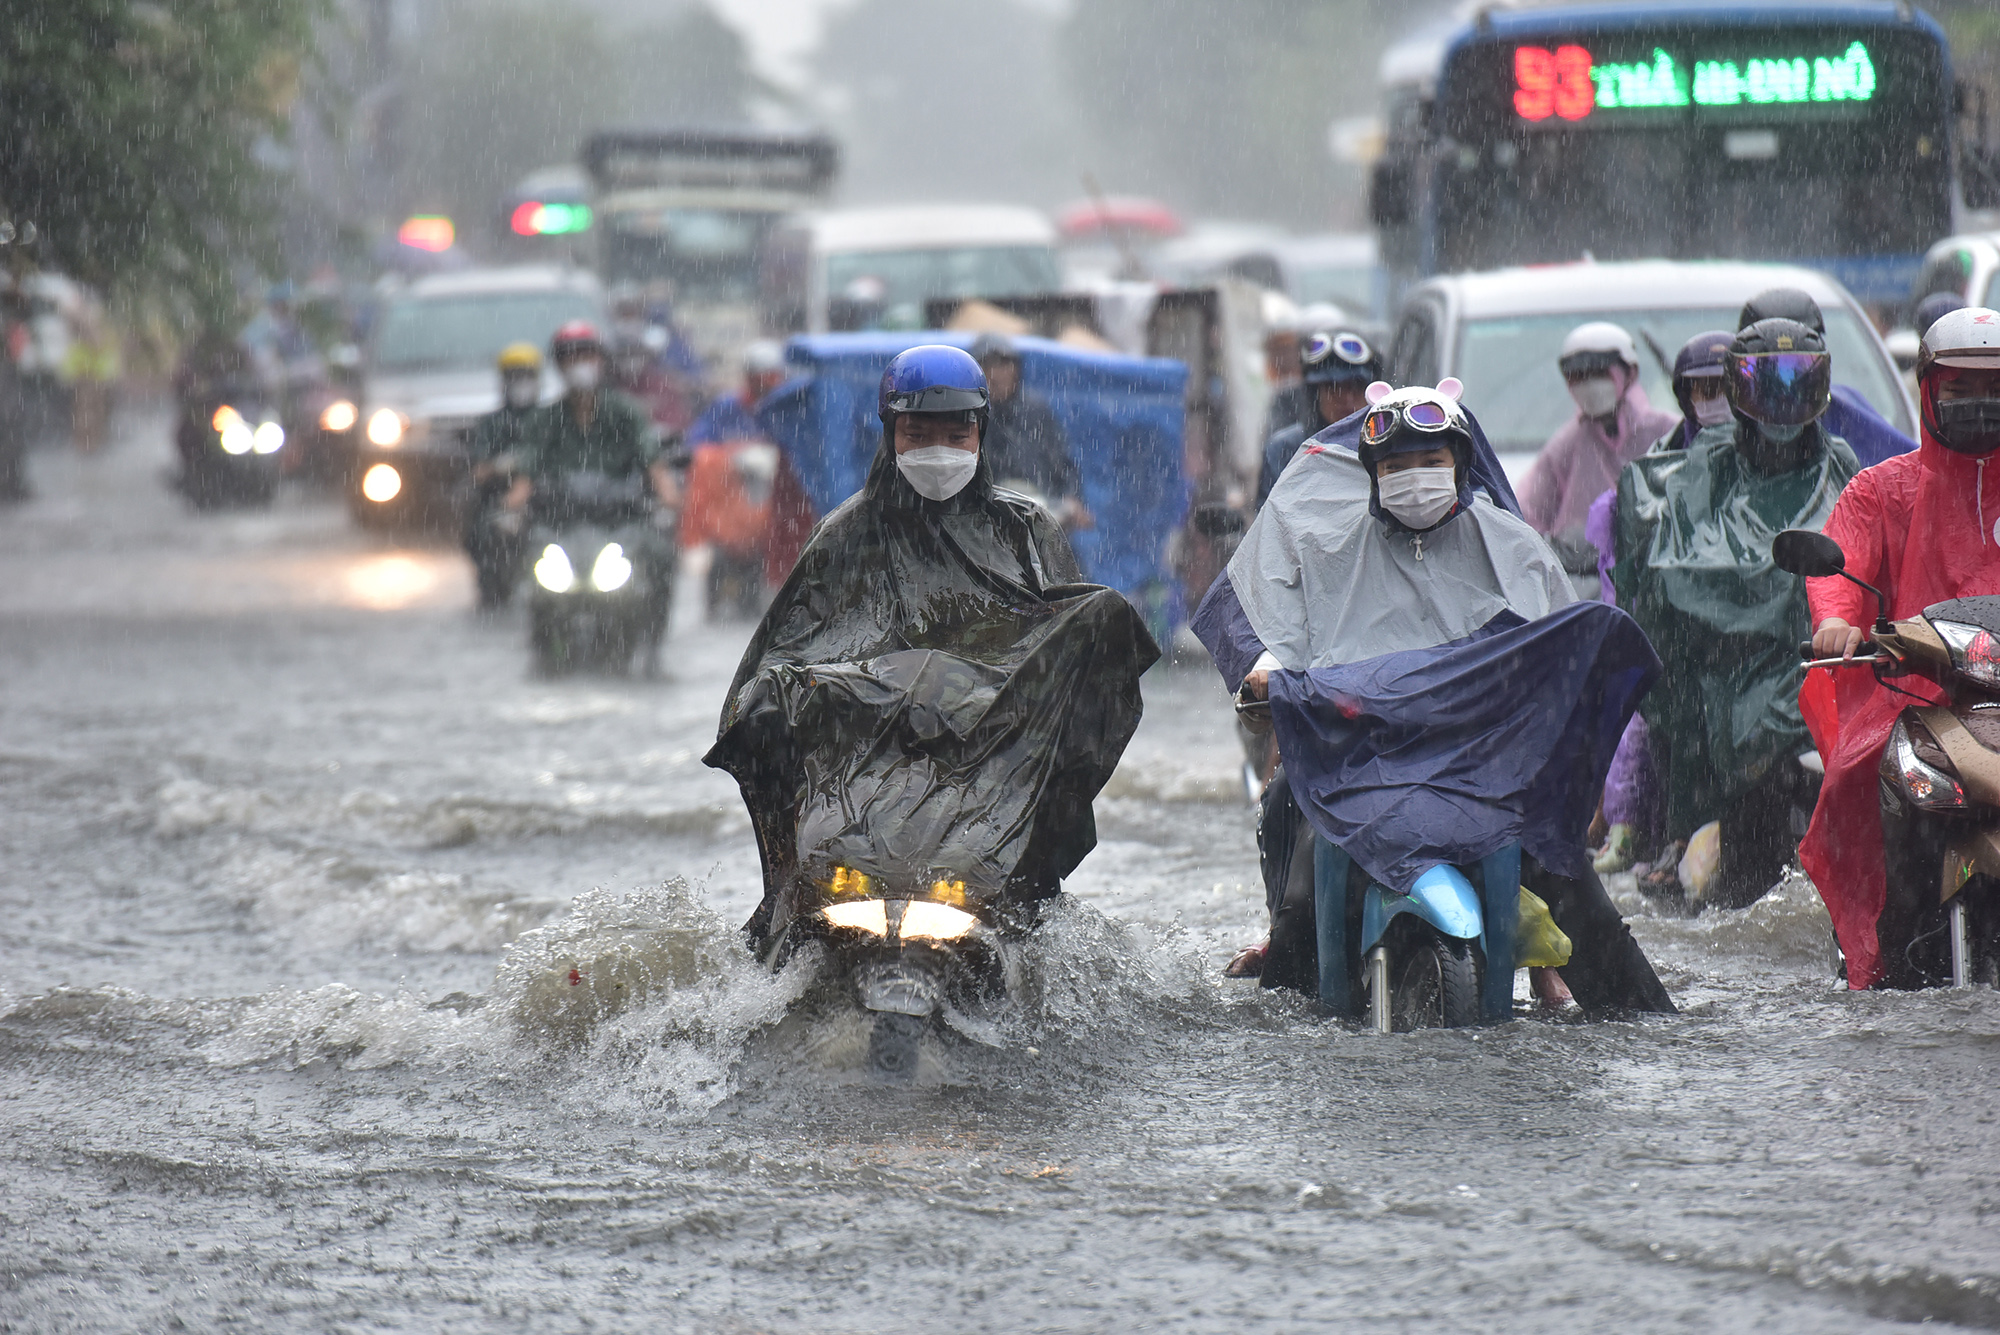 TP.HCM mưa xối xả giữa lúc tan tầm, người và xe khổ sở 